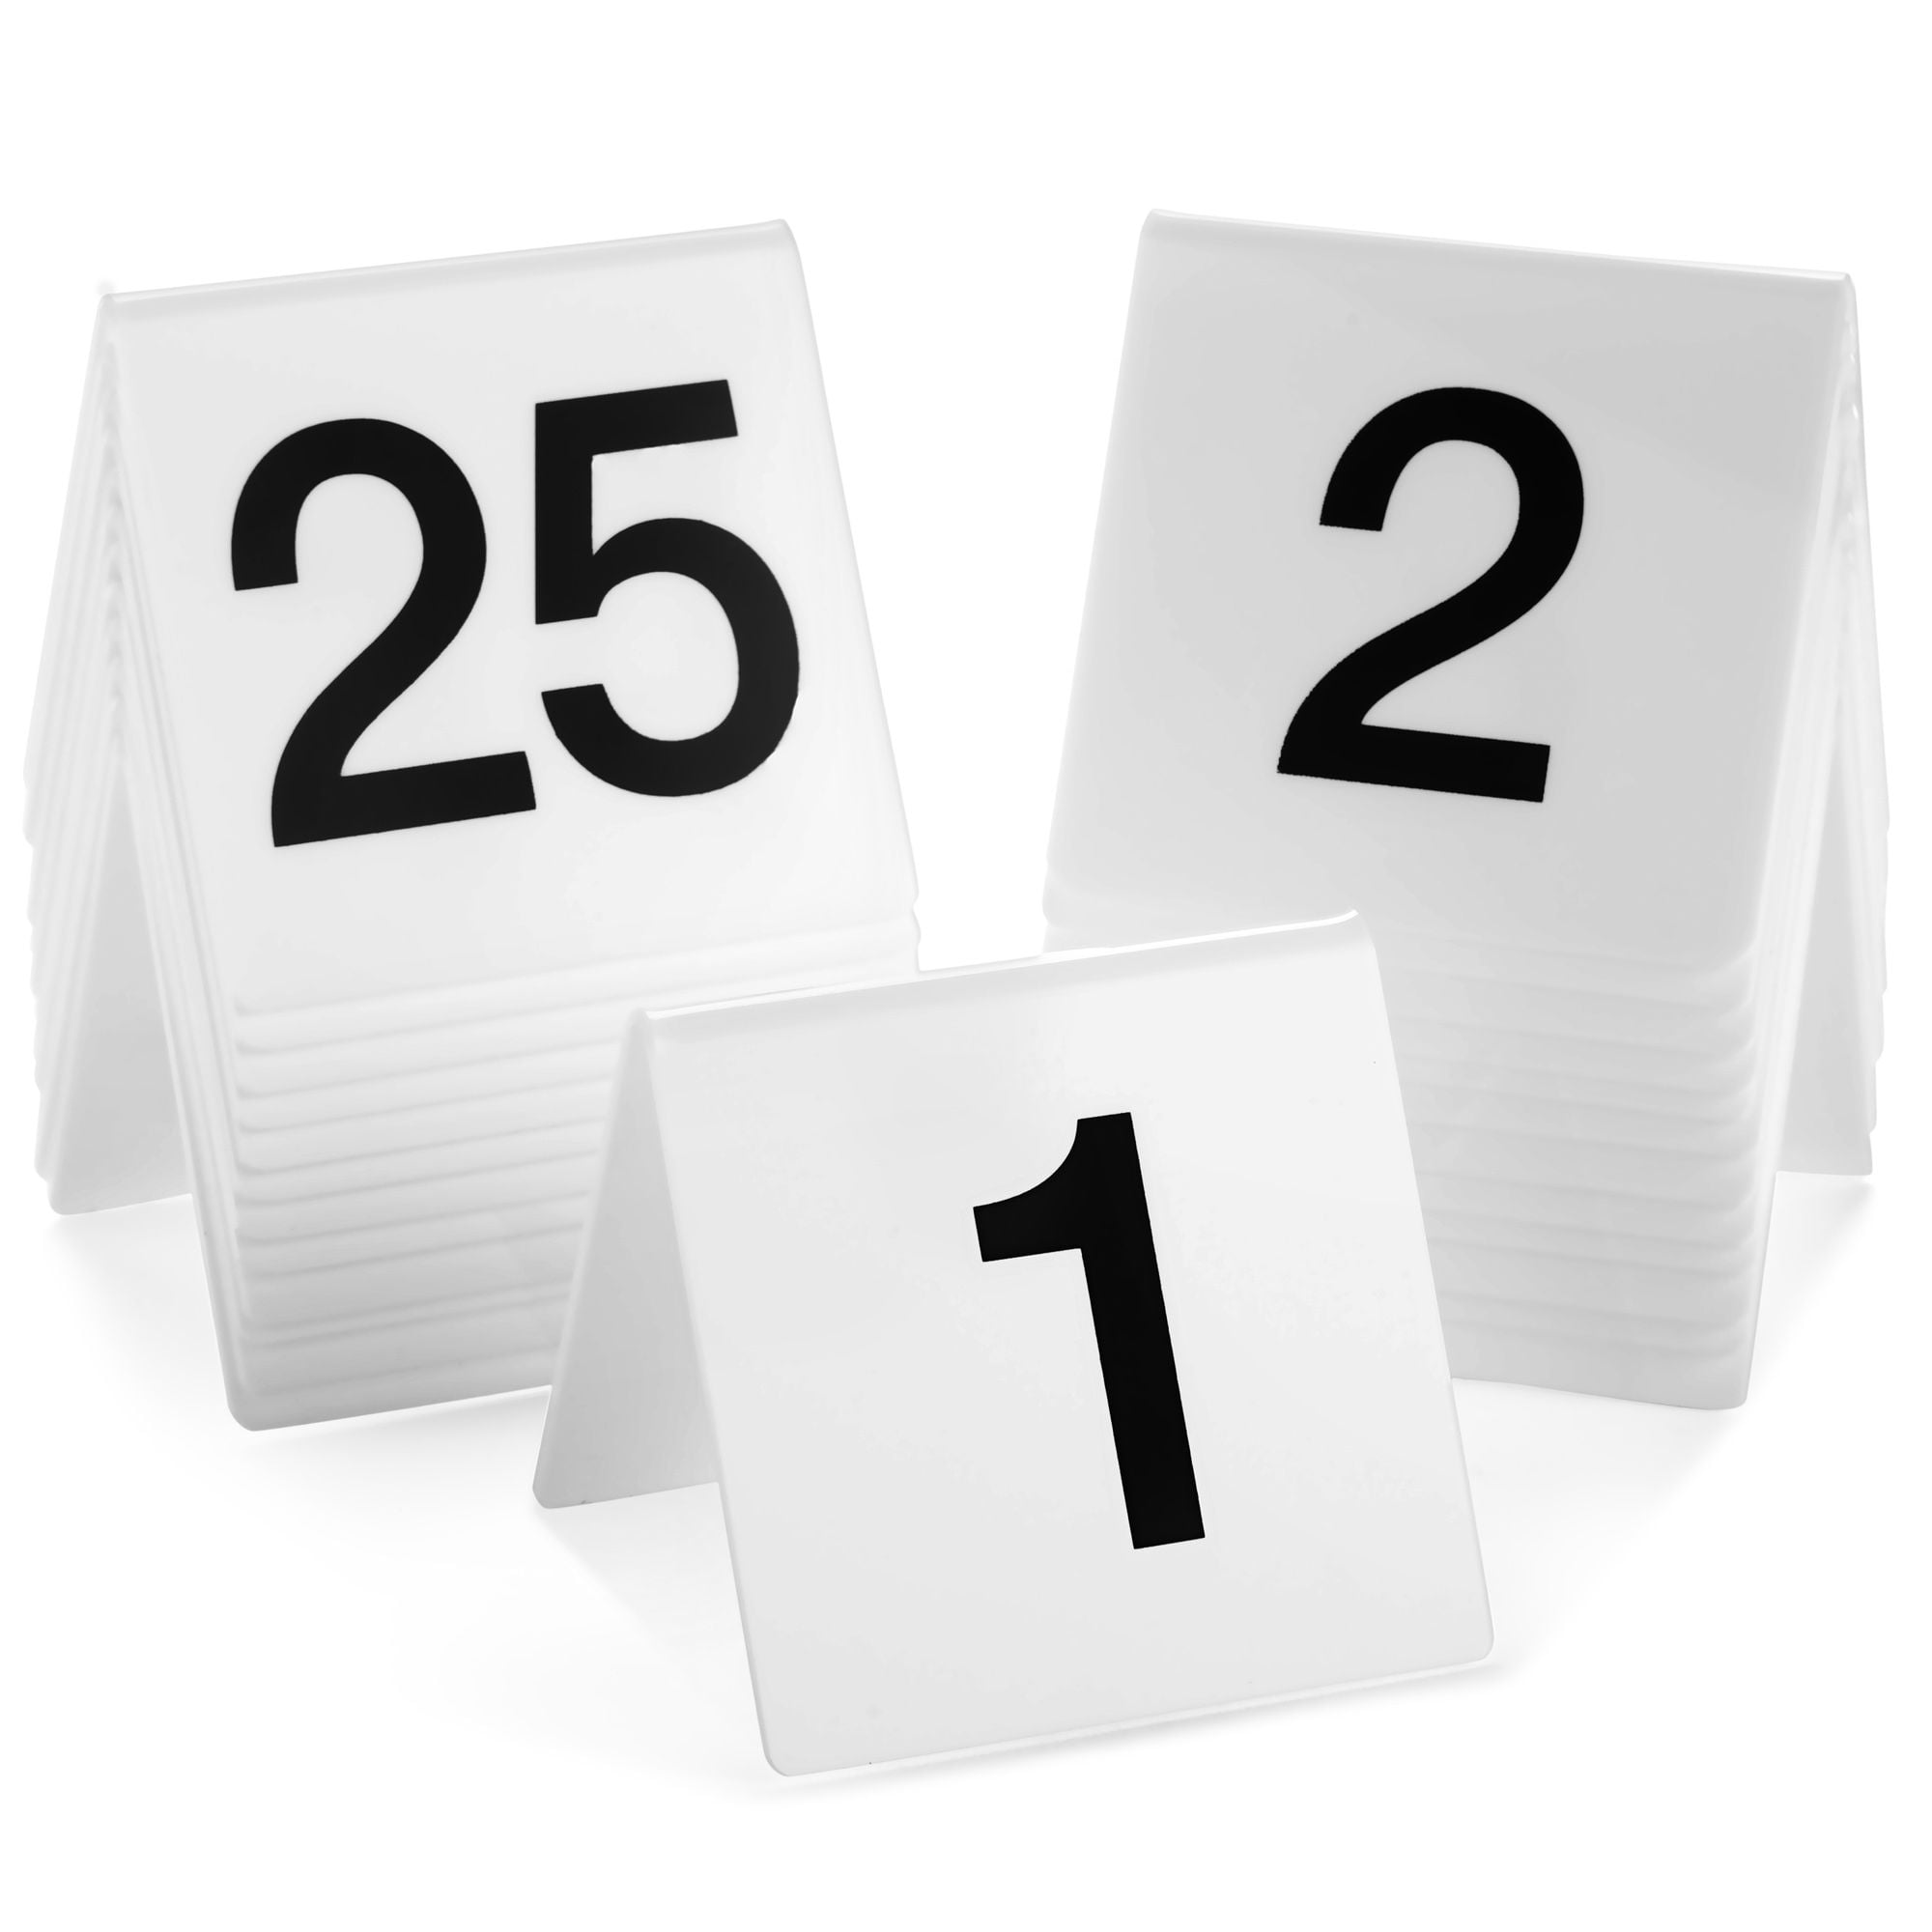 40 Stück Acryl Zelt Tischnummern Restaurant Party Bankette 1-40  doppelseitig nummeriert Tischnummer Arbeitsmarker Zubehör